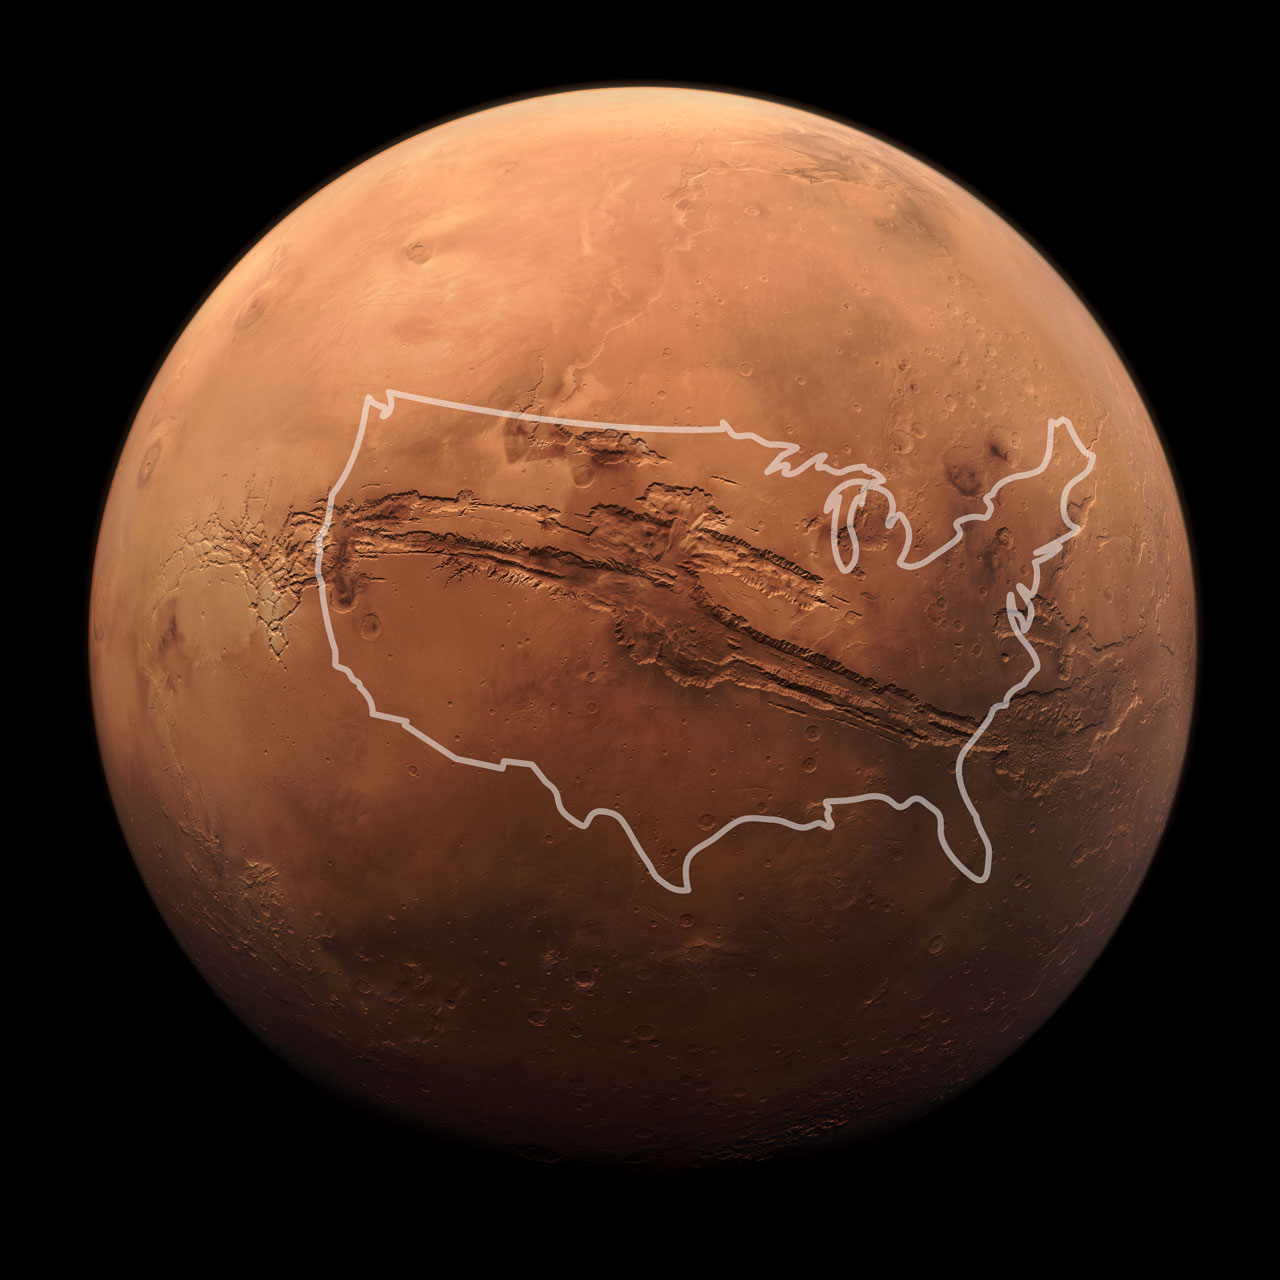 Контур території США без Аляски в плошині Марса. Фото надане автором